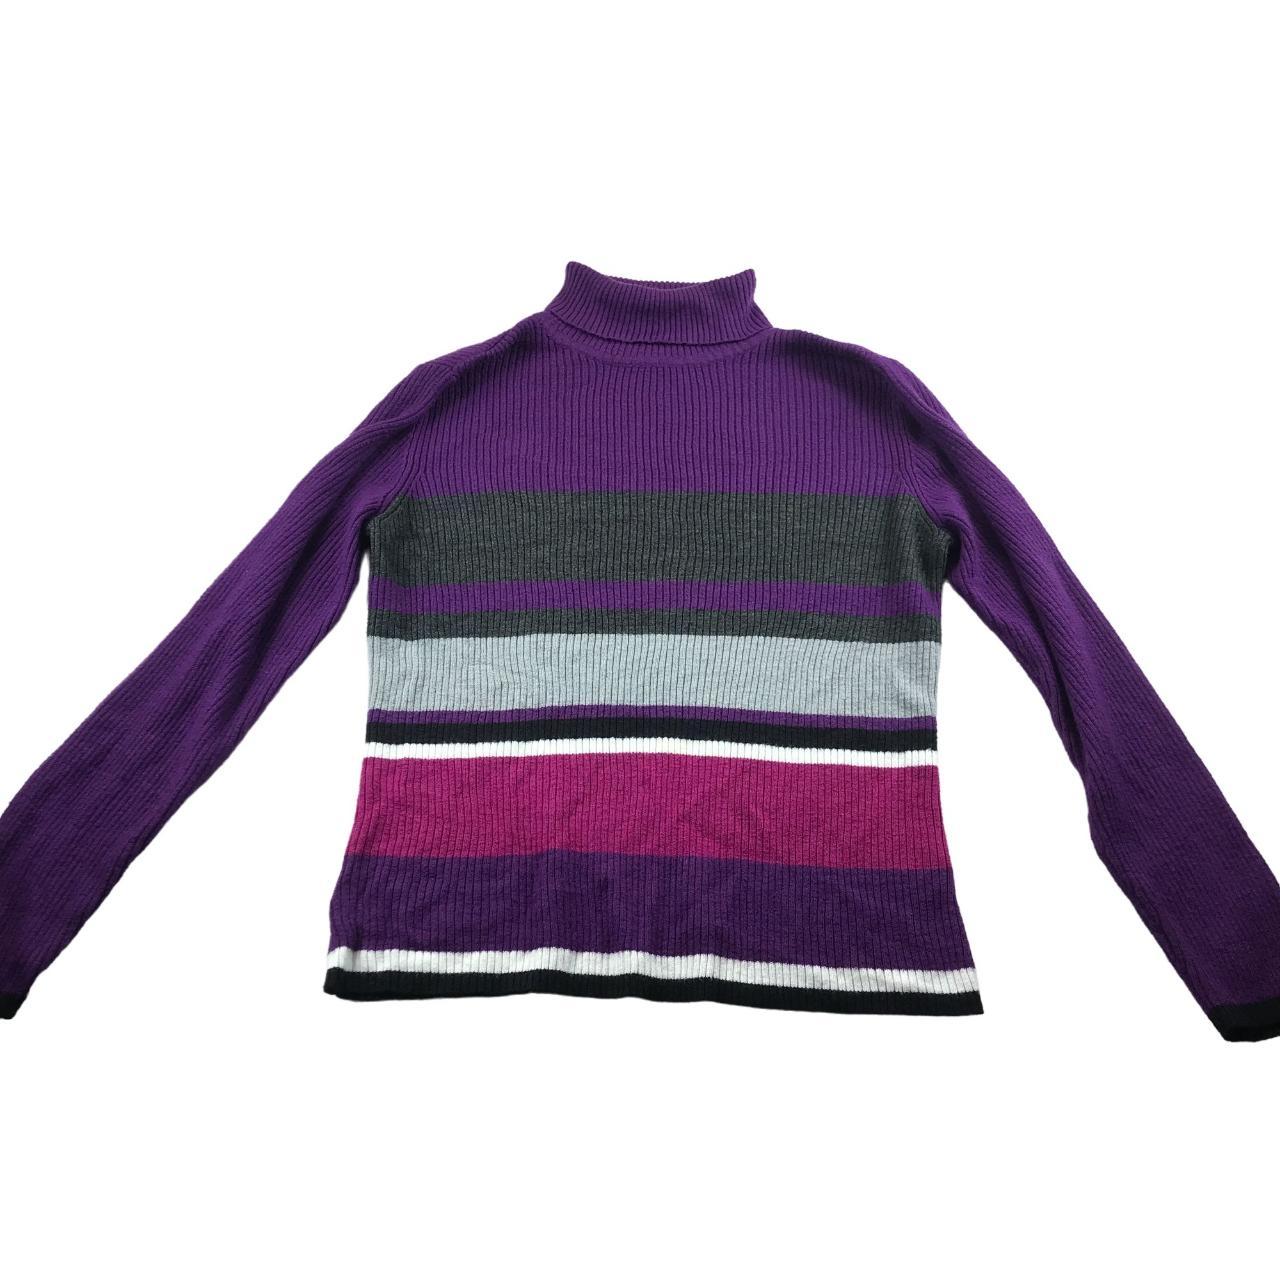 Vintage Y2K Sag Harbor Turtleneck Sweater Size M... - Depop